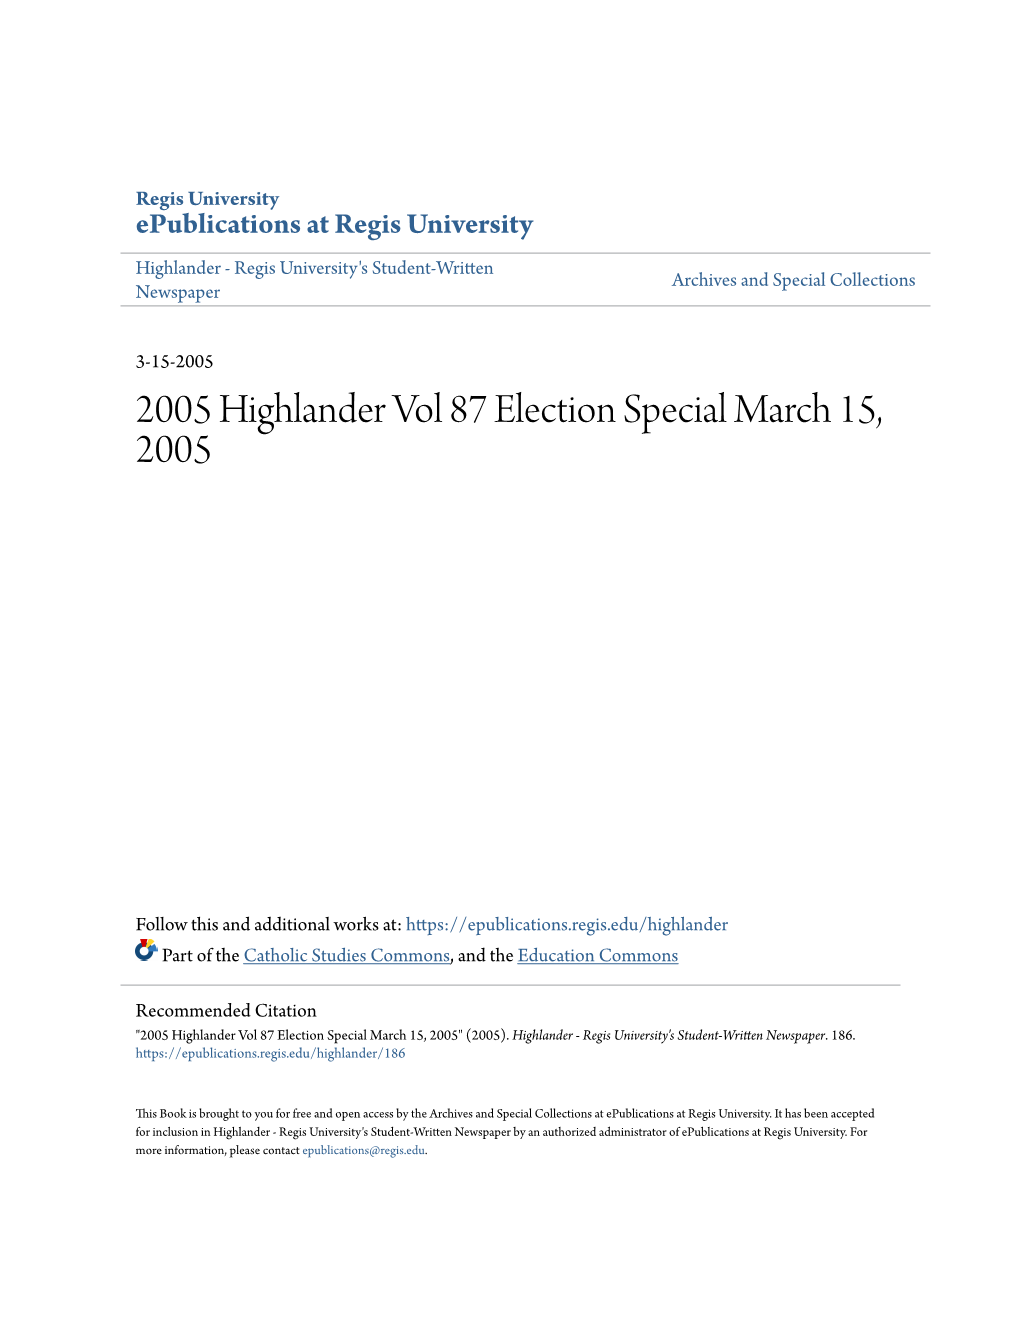 2005 Highlander Vol 87 Election Special March 15, 2005